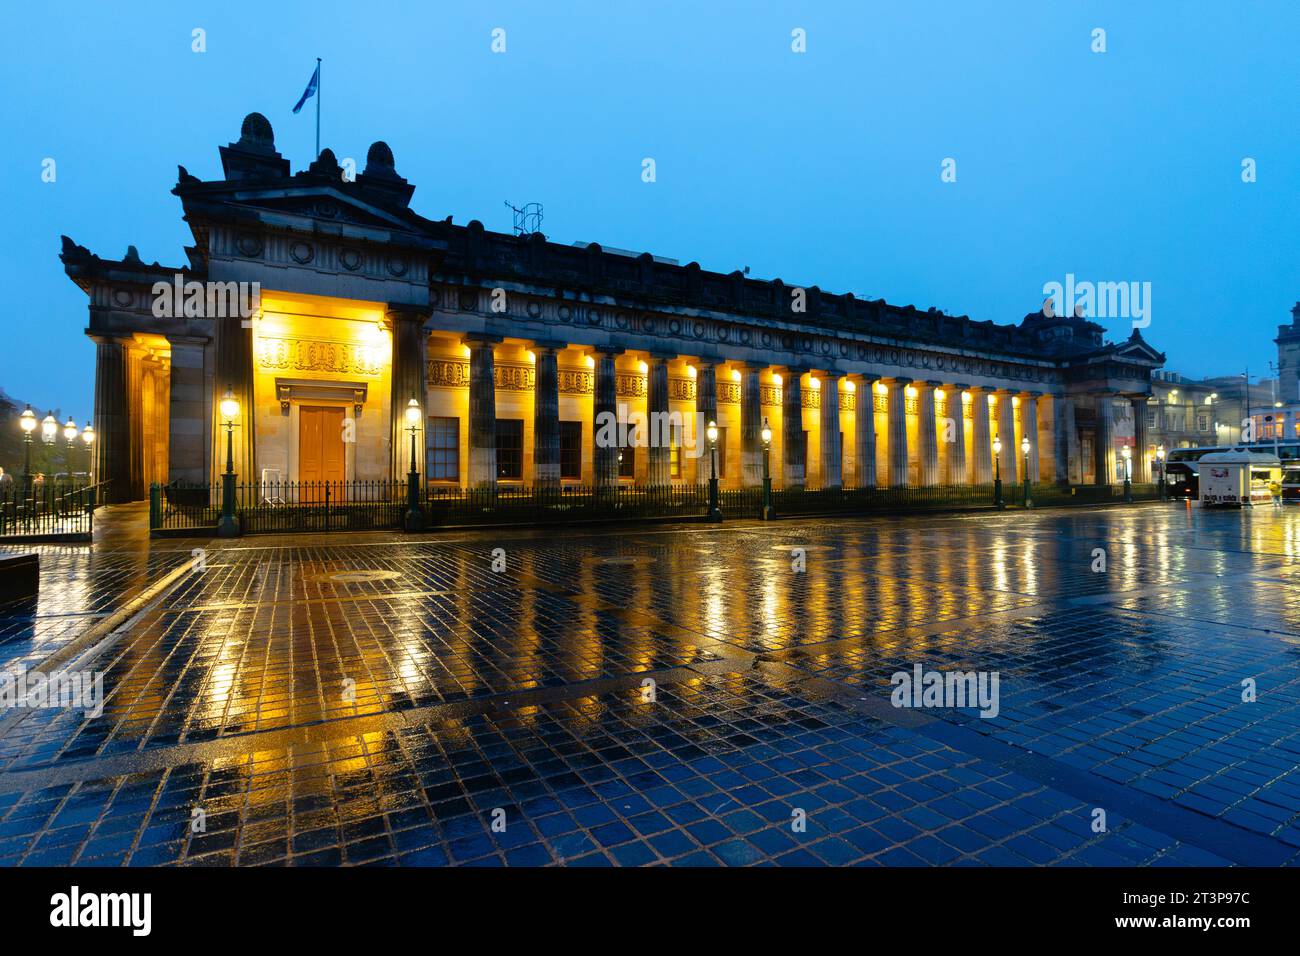 Abendlicher Blick auf das Kunstmuseum der Royal Scottish Academy mit Flutlicht im Regen in Edinburgh, Schottland, Großbritannien Stockfoto